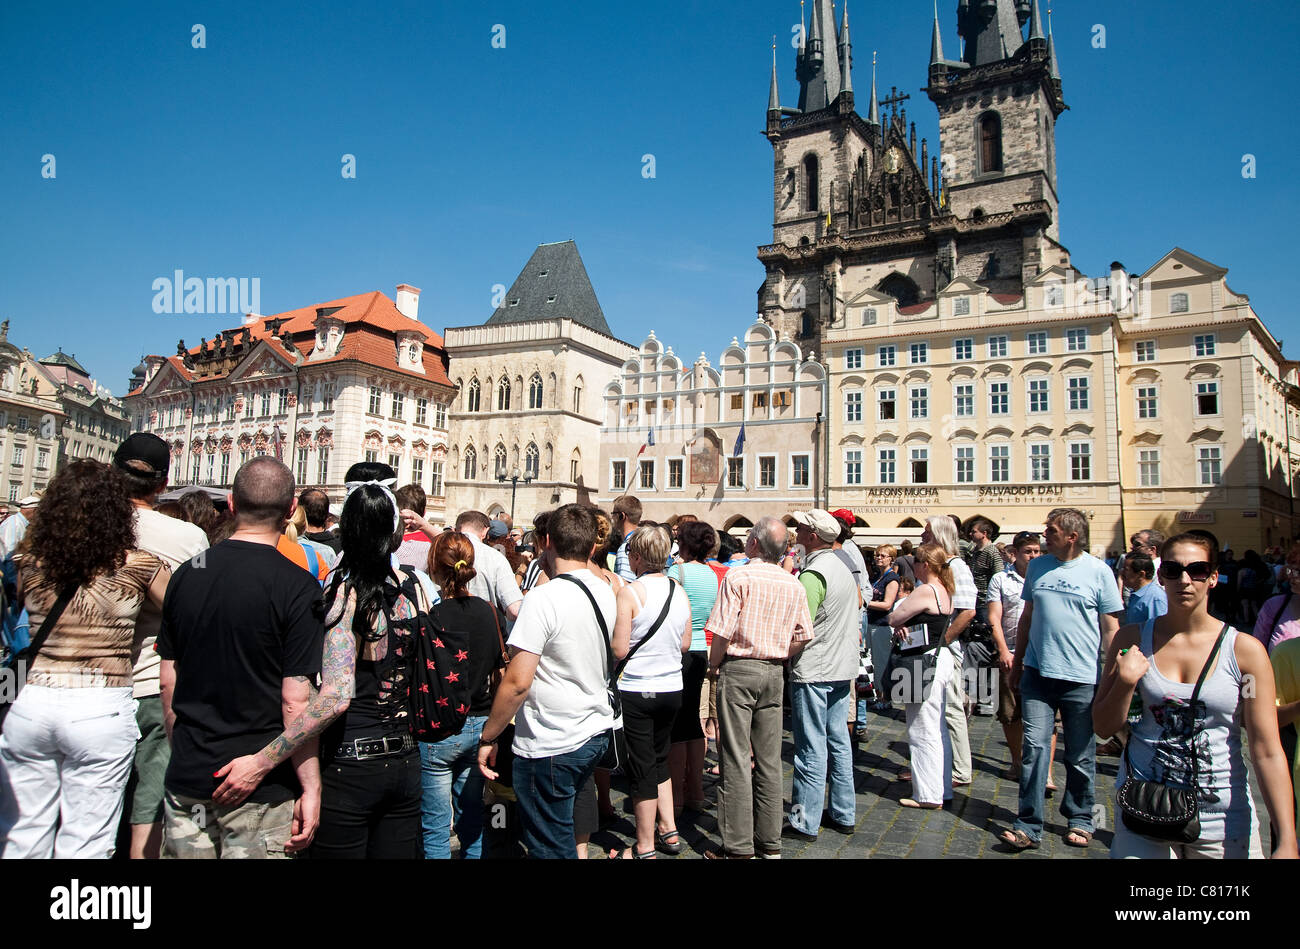 Agosto 2011 - Praga Repubblica Ceca - grande gruppo di turisti in Piazza della Città Vecchia. Foto Stock